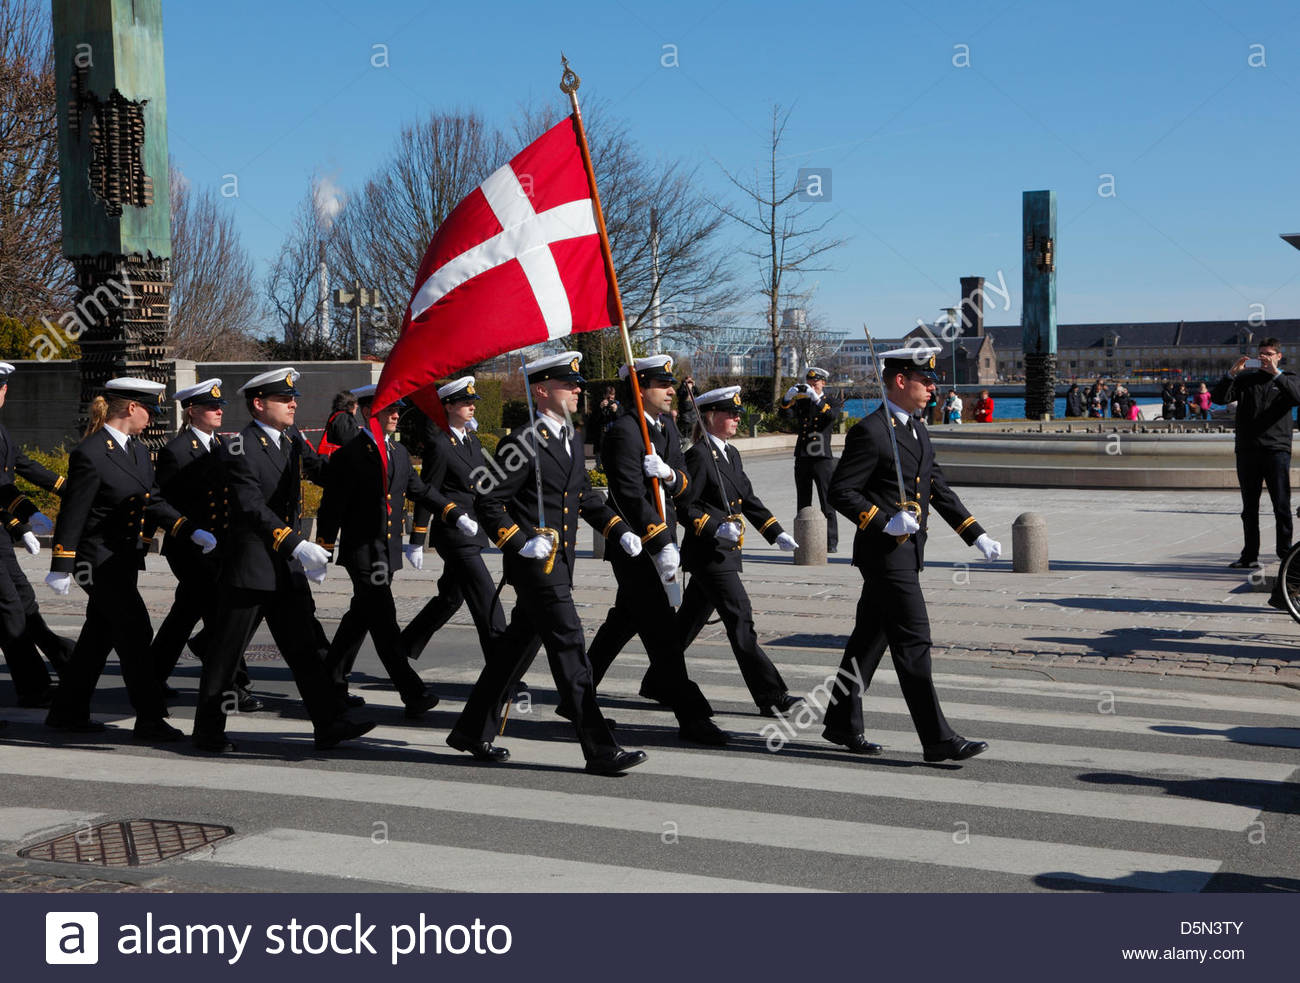 copenhagen-denmark-april-4th-2013-cadets-from-the-royal-danish-naval-D5N3TY.jpg